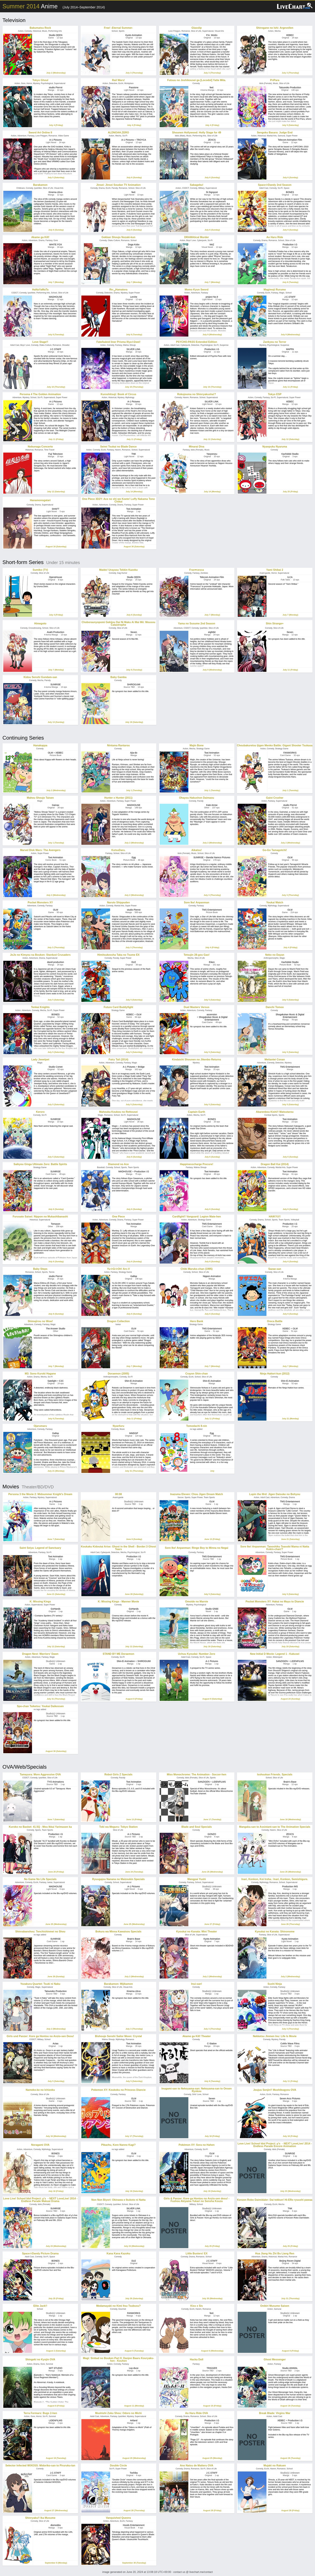 Anime Summer 2014 Air Dates